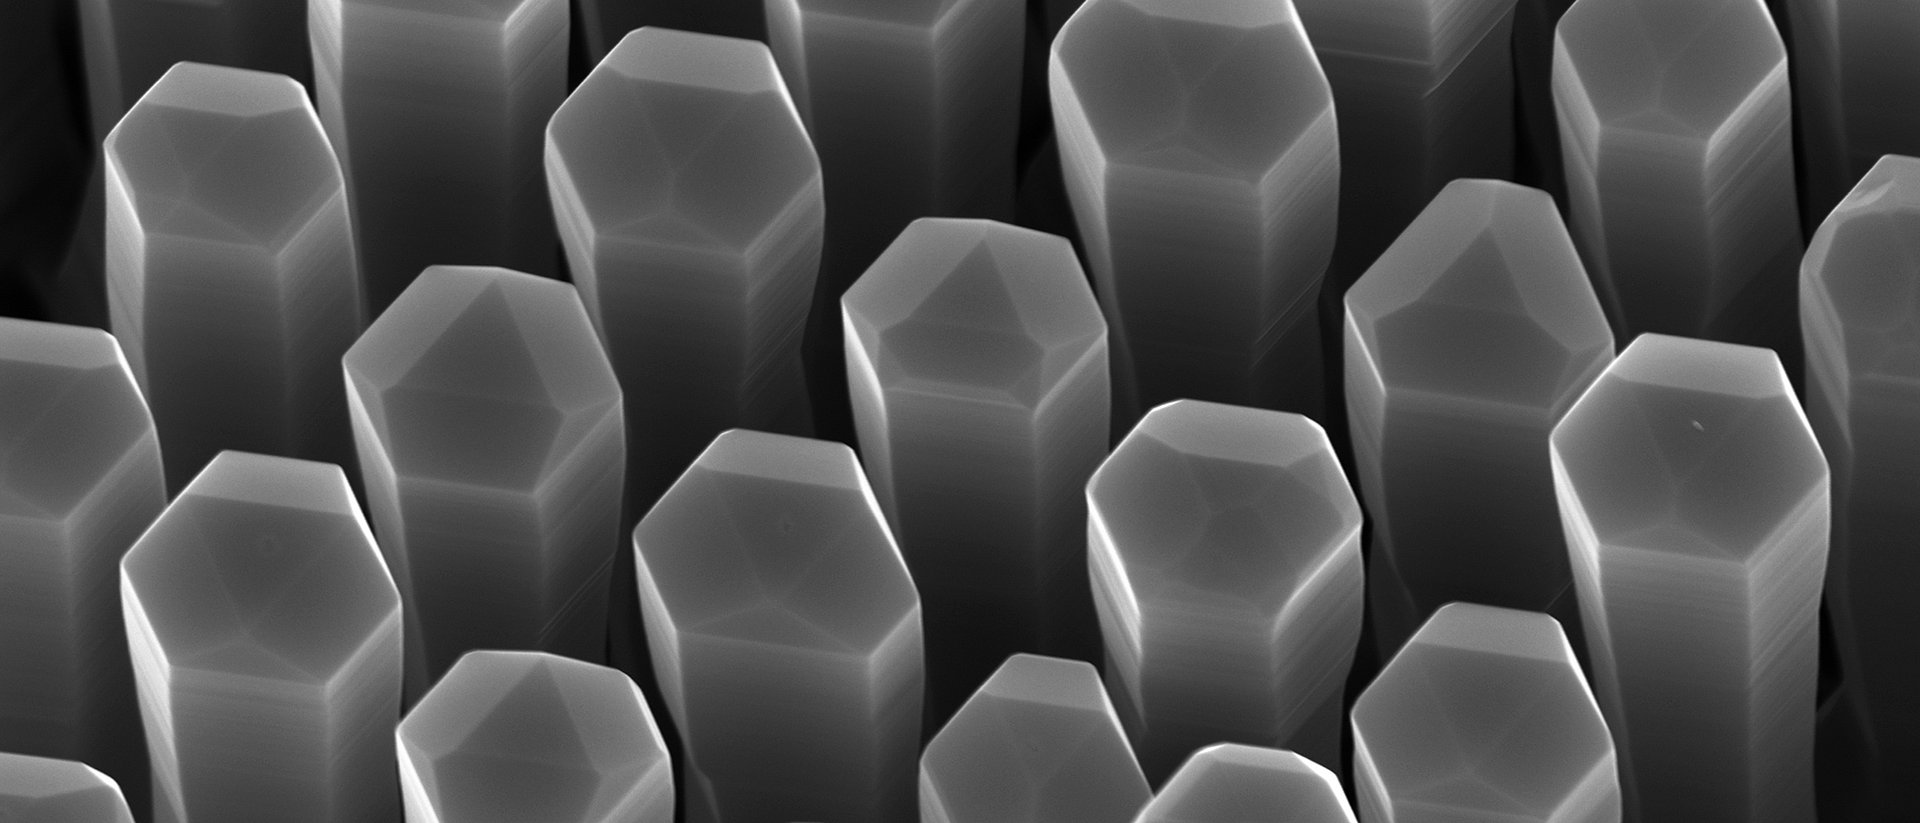 Nanodrähte aus Germanium-Silizium-Legierung mit hexagonalem Kristallgitter können Licht erzeugen. Für Photonik-Chips könnten sie direkt in die gängigen Prozesse der Silizium-basierten Halbleitertechnologie integriert werden.